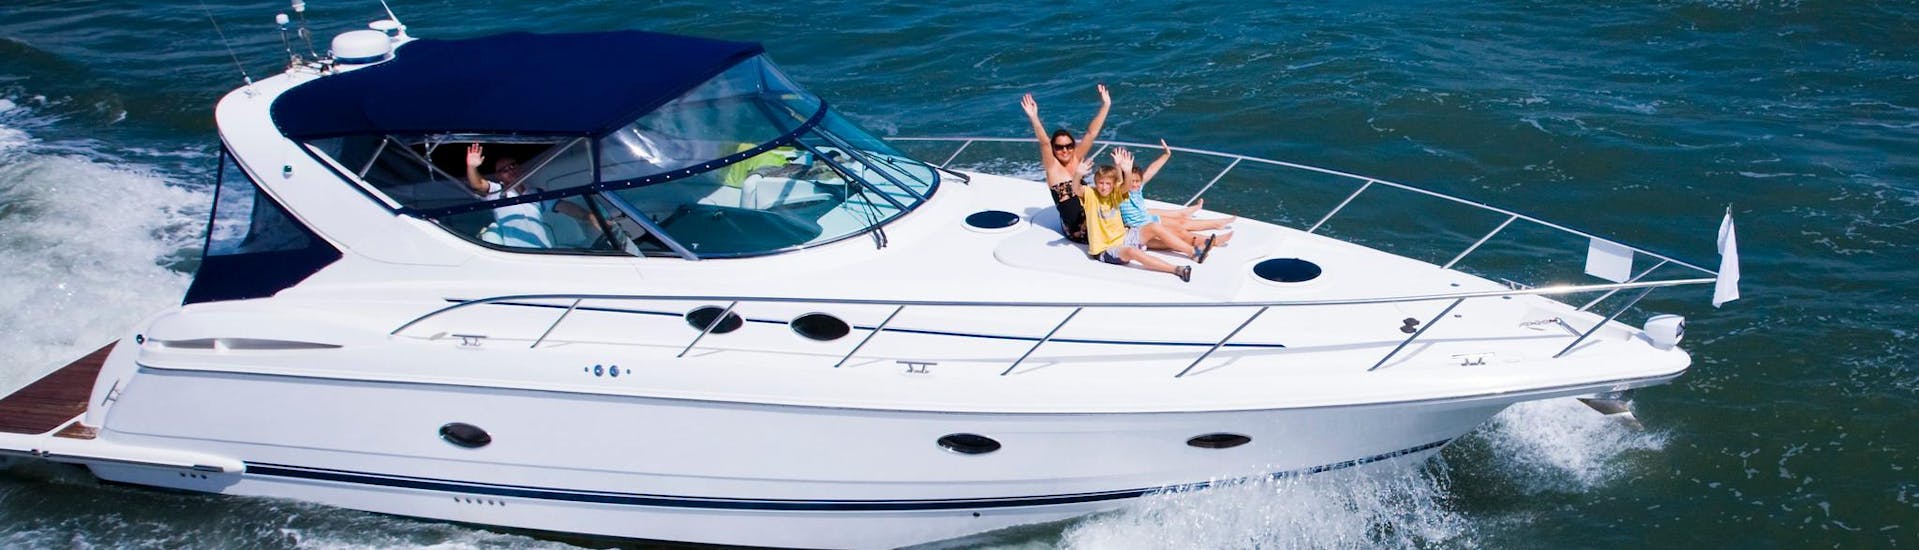 Una madre si diverte con i suoi due figli durante una gita in yacht